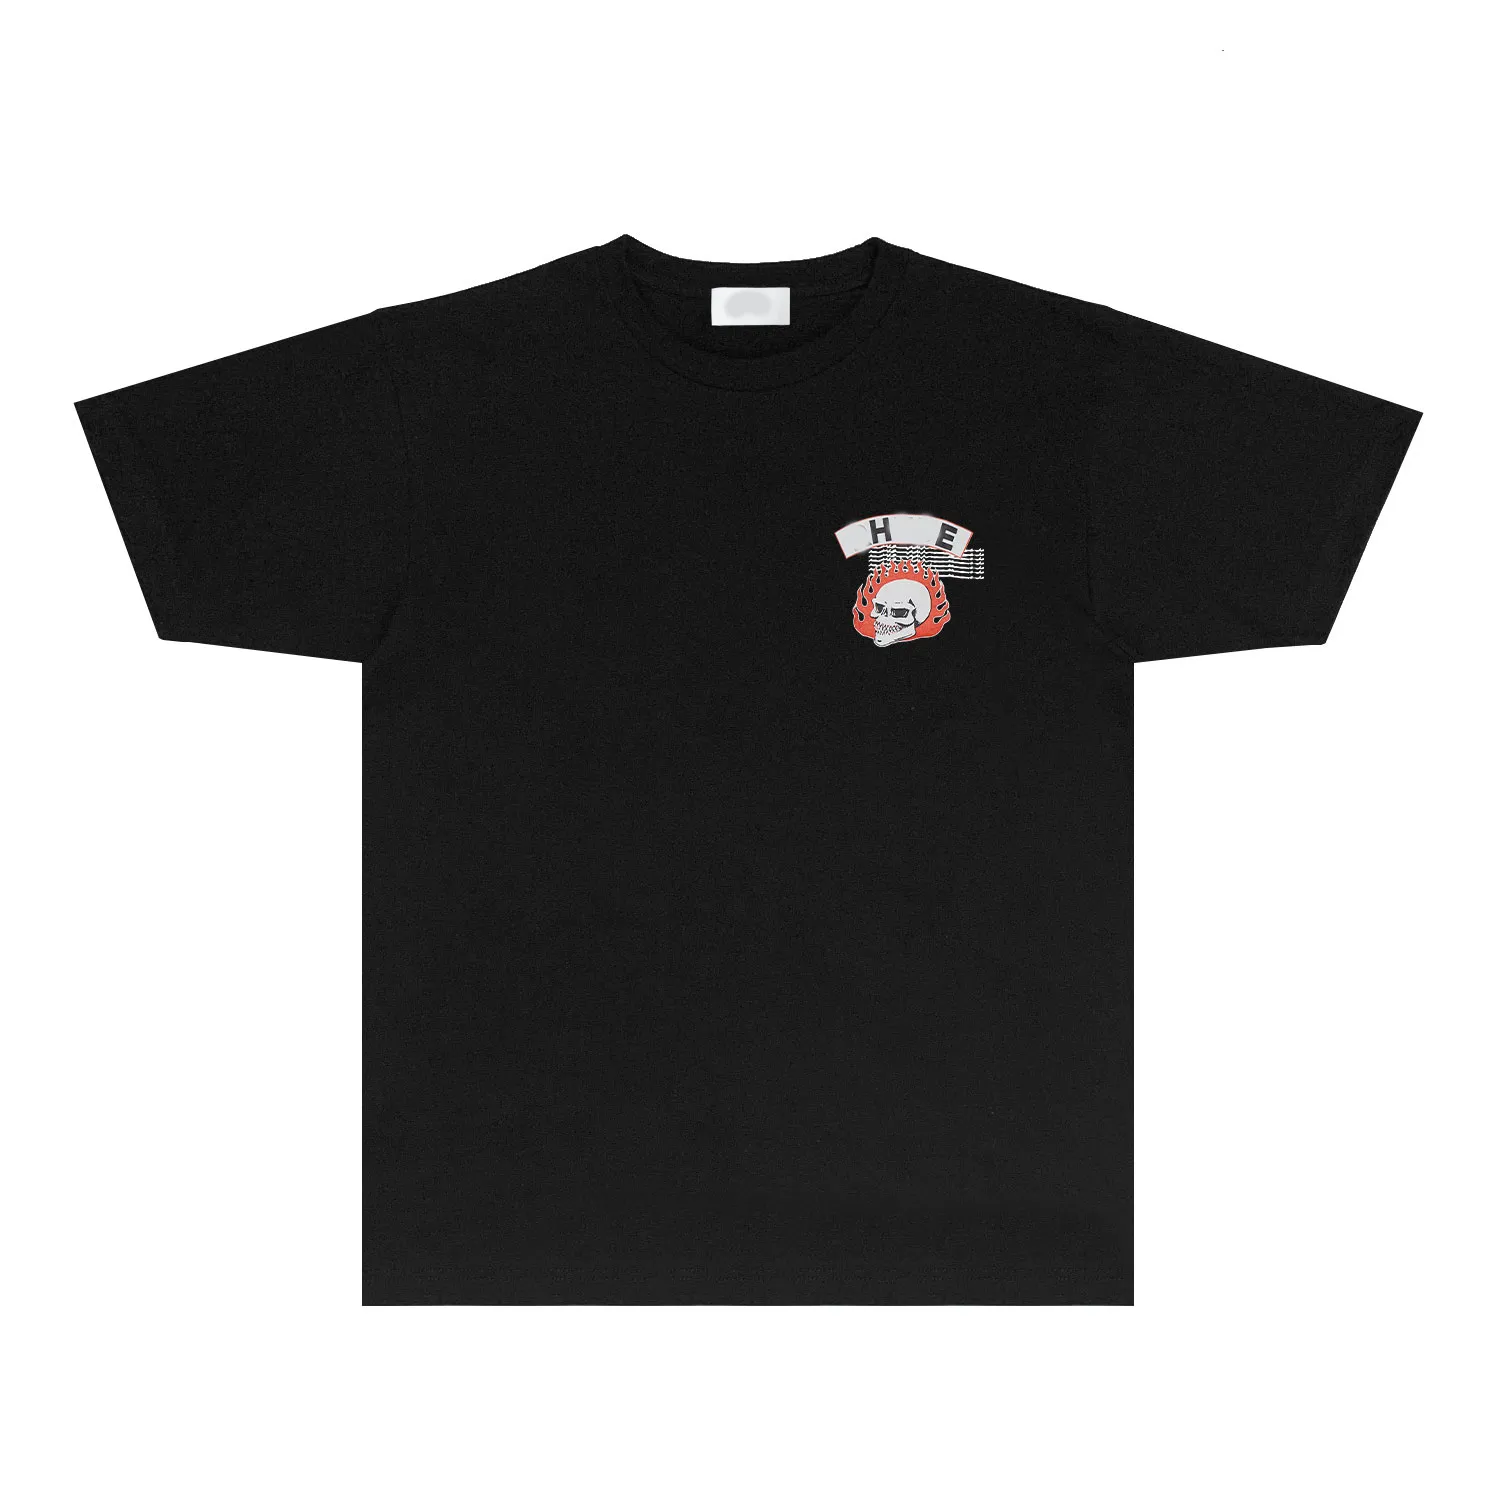 Kobiety T Shirt Hip-hop luźne punkowe drukowanie drukowania rh063 Flame czaszka nadrukowana koszulka krótkiego rękawu R90W84 Tshirt męskie i damskie letni top